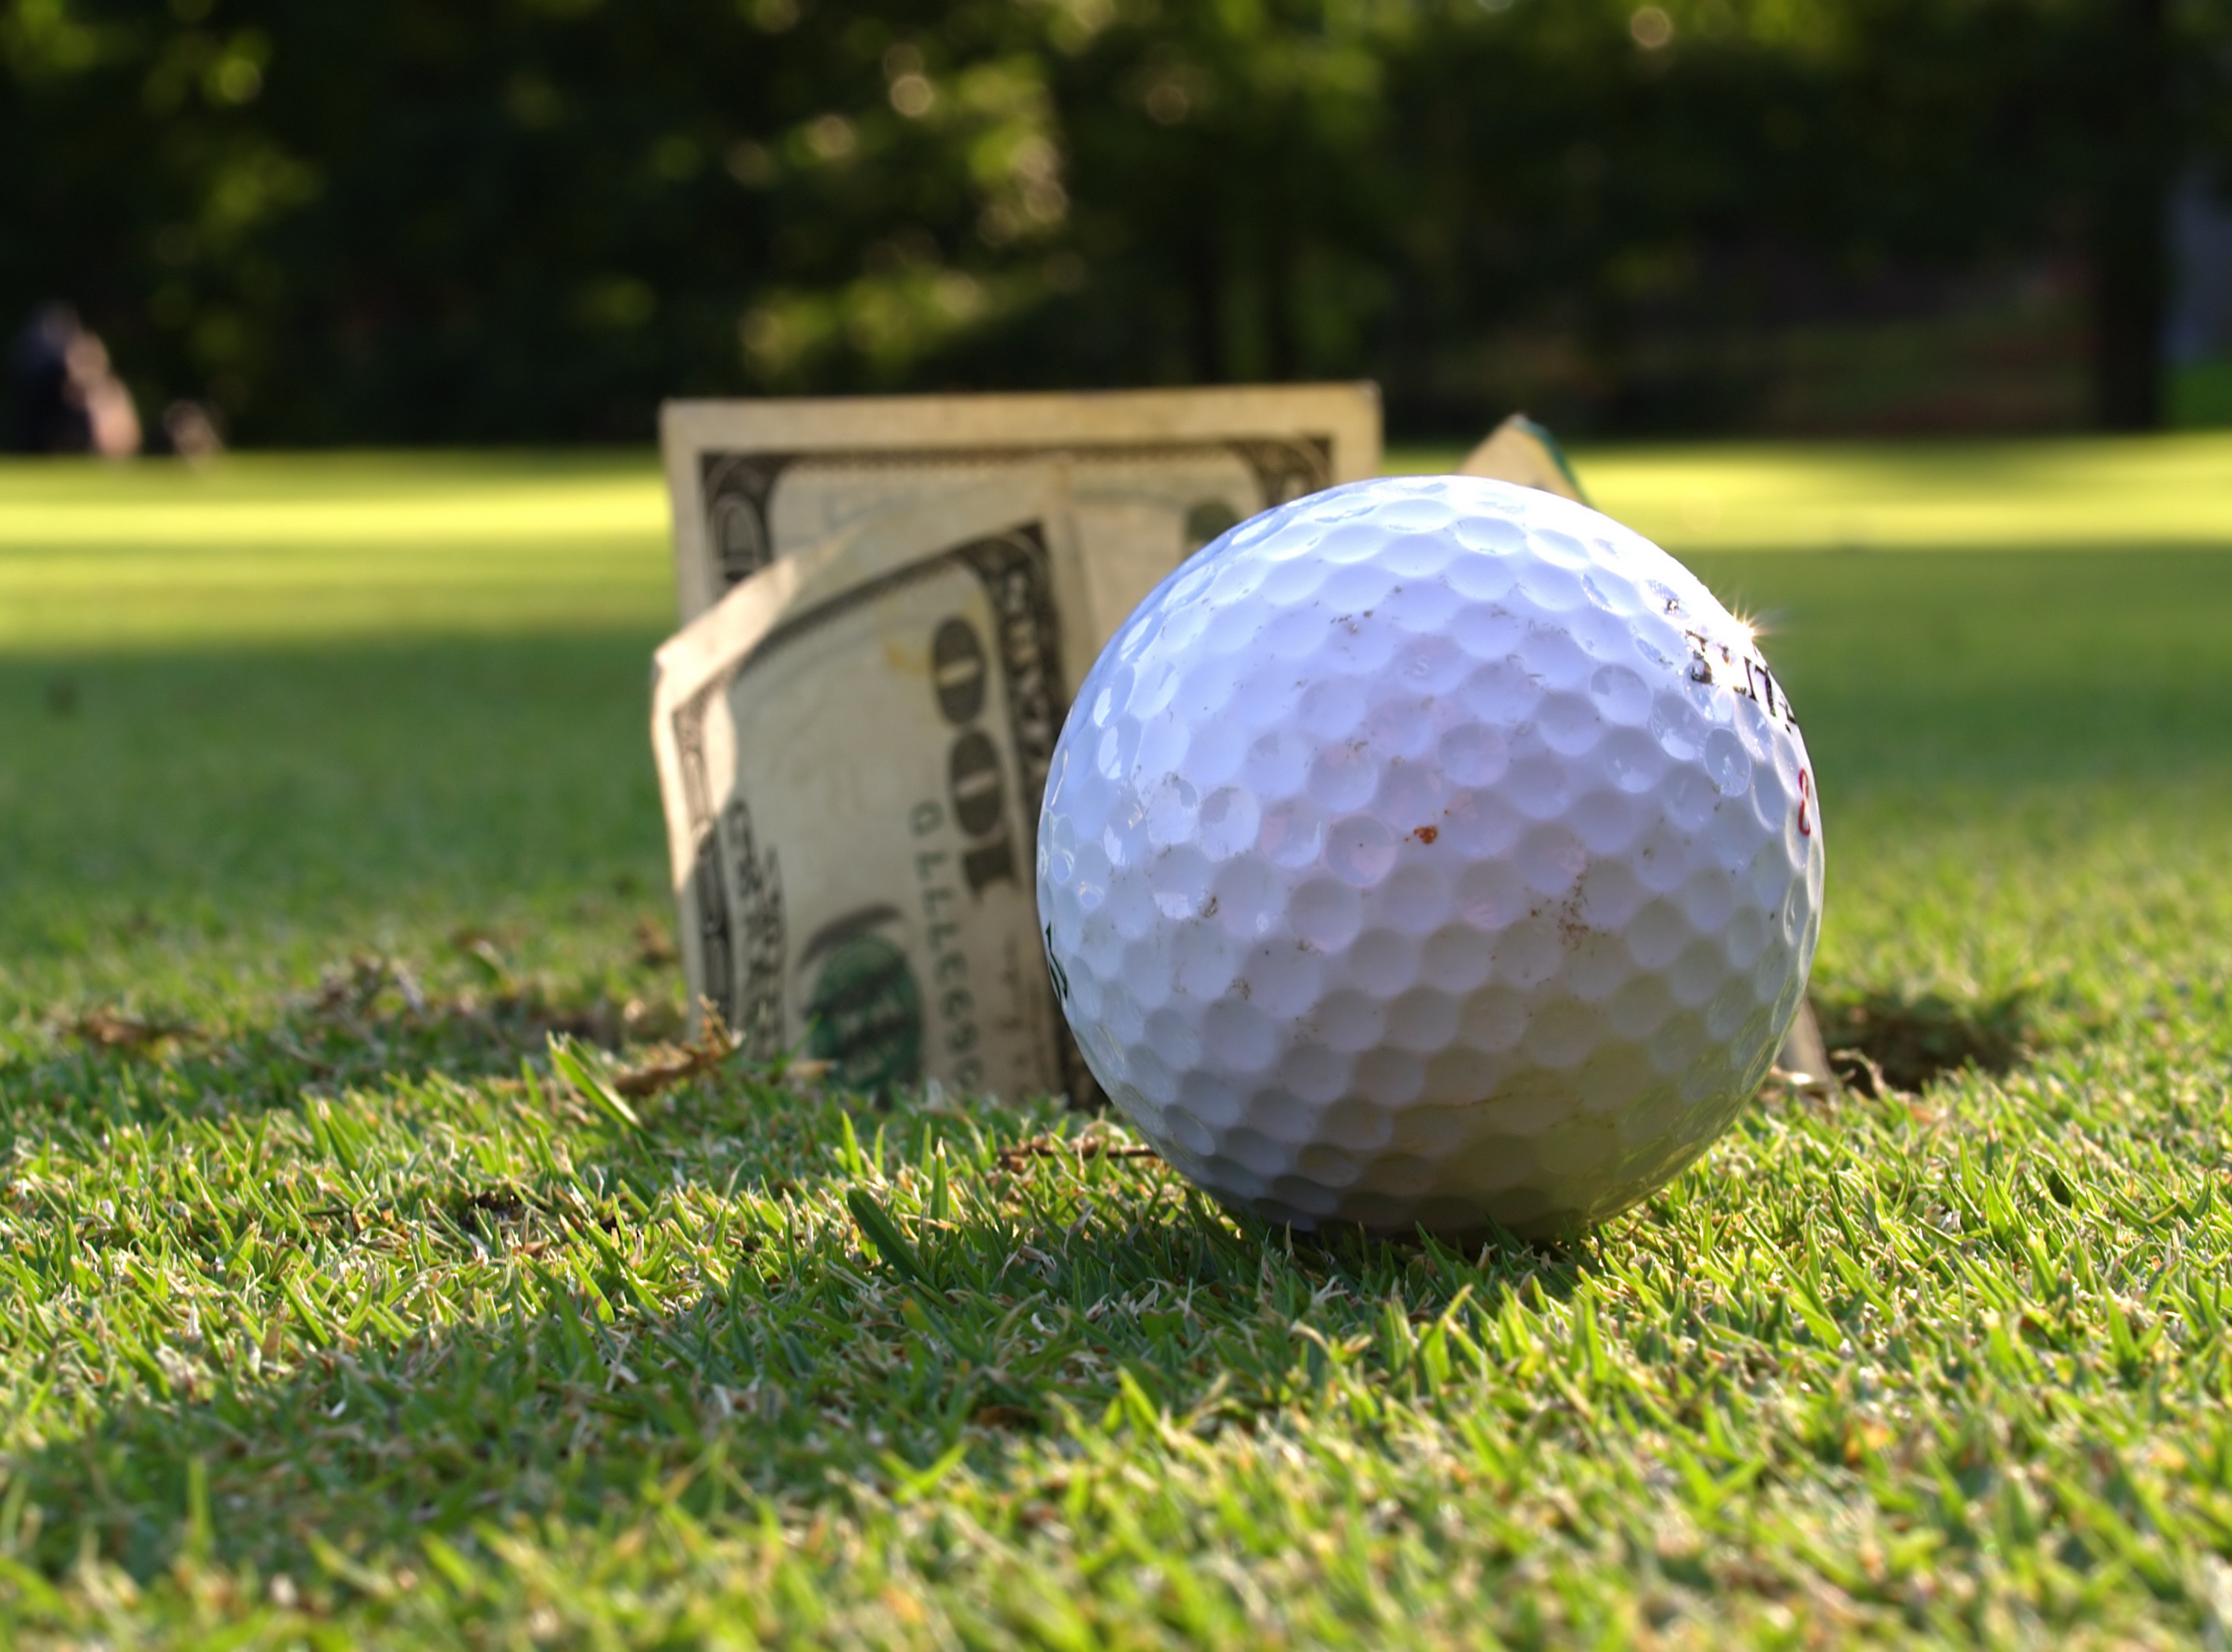 Hợp pháp hóa cá cược cho golf chuyên nghiệp làm xấu đi hình ảnh của môn thể thao quý tộc